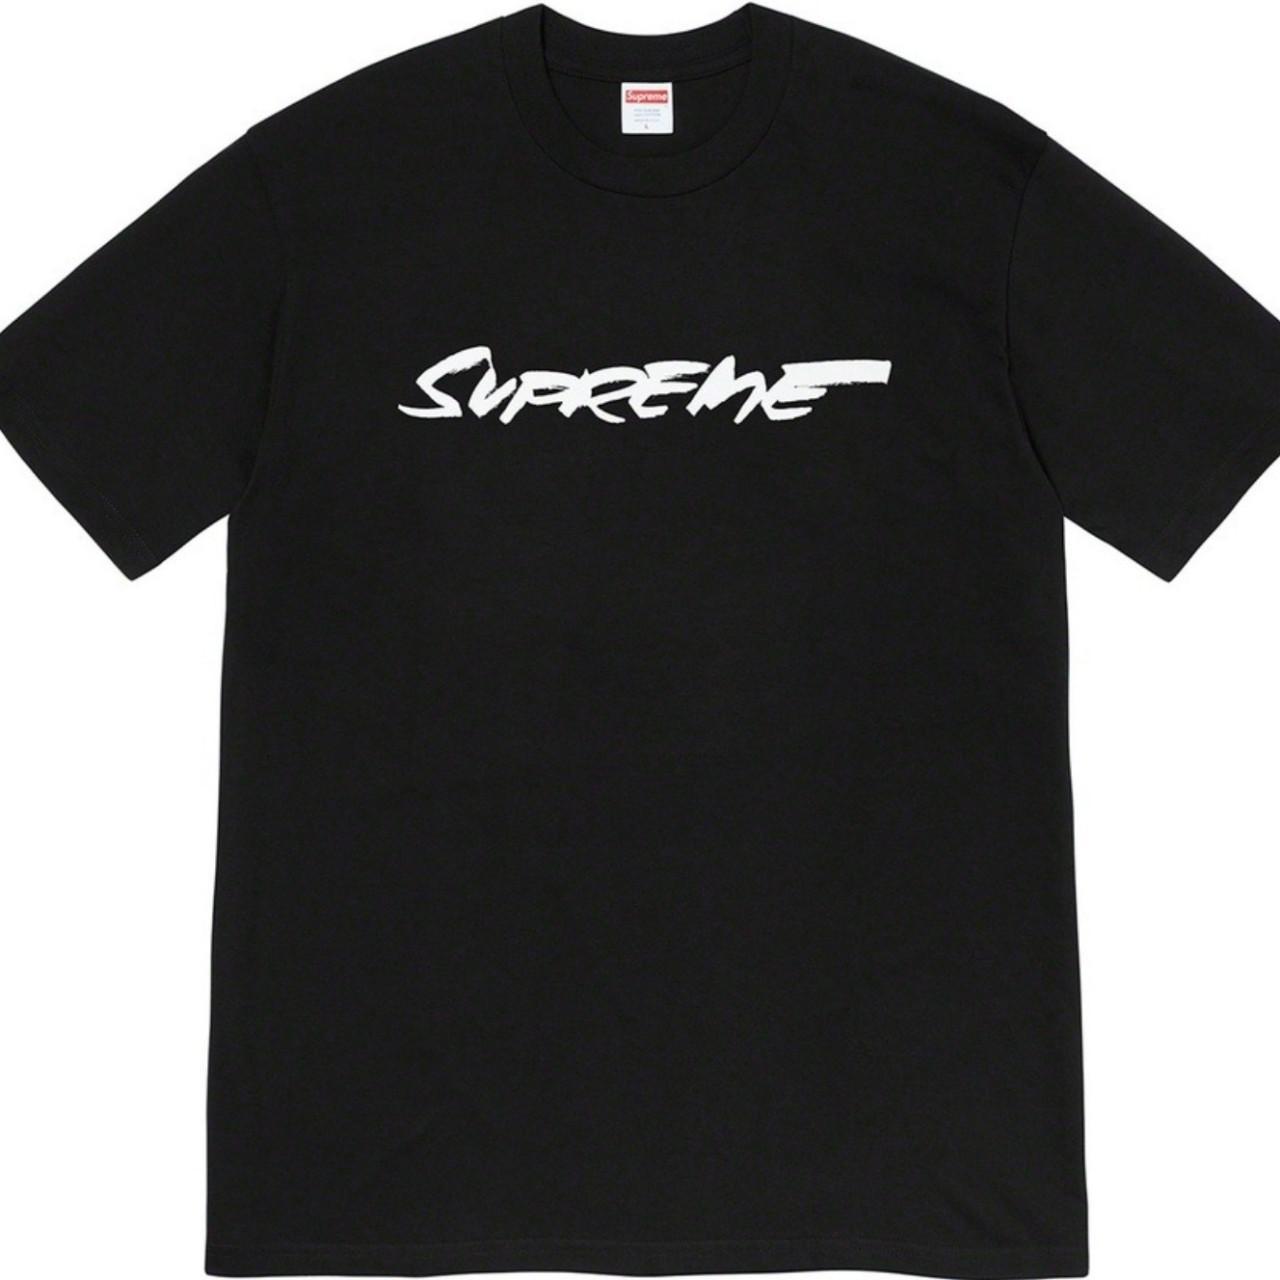 Supreme Men's Black and White T-shirt (2)